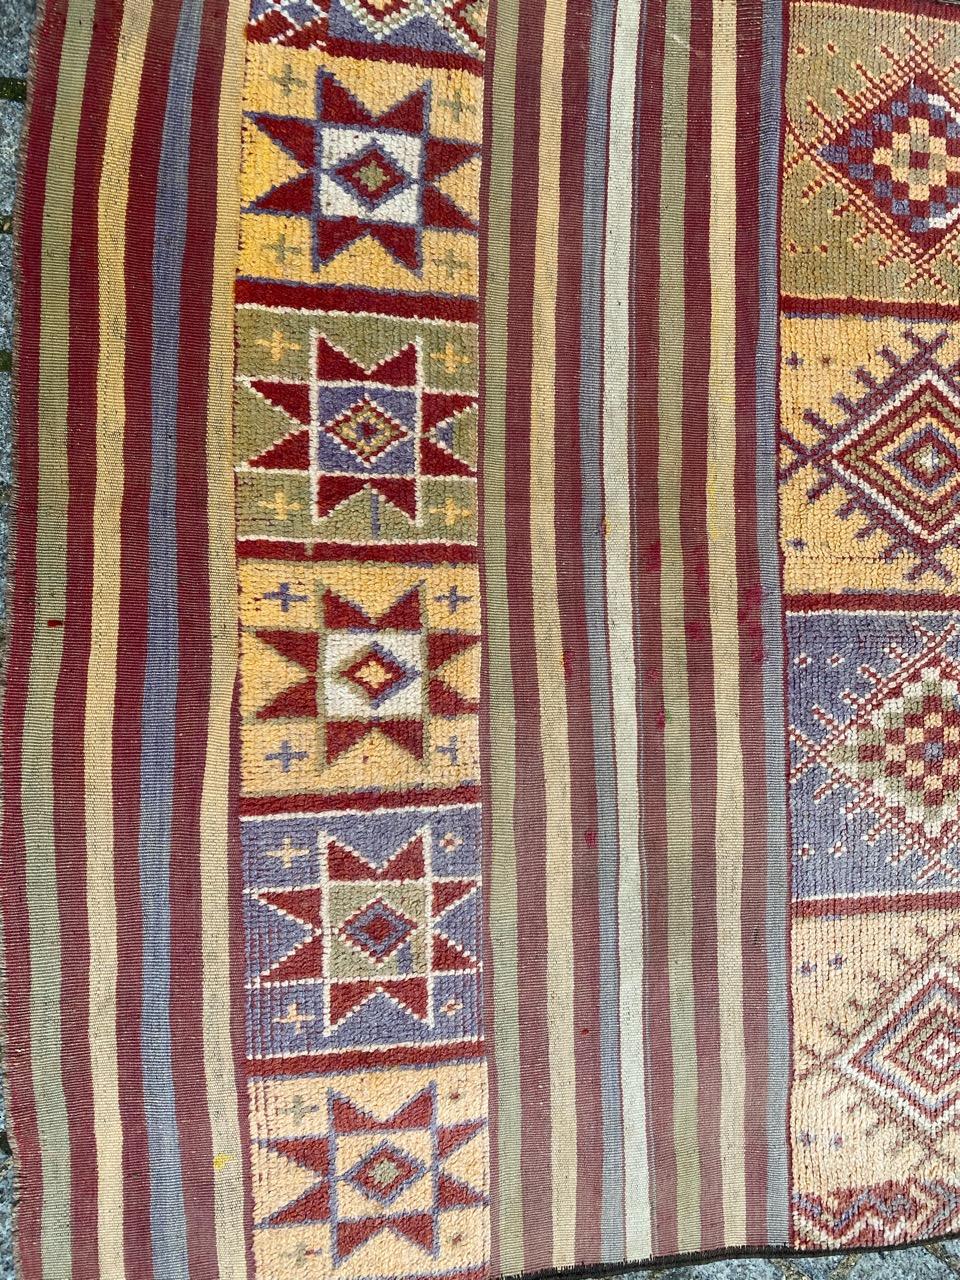 Joli tapis marocain au design géométrique tribal et aux couleurs claires, entièrement noué à la main sur certaines parties et tissé en Rug & Kilim sur d'autres parties, avec du velours de laine sur une base de laine.

✨✨✨
